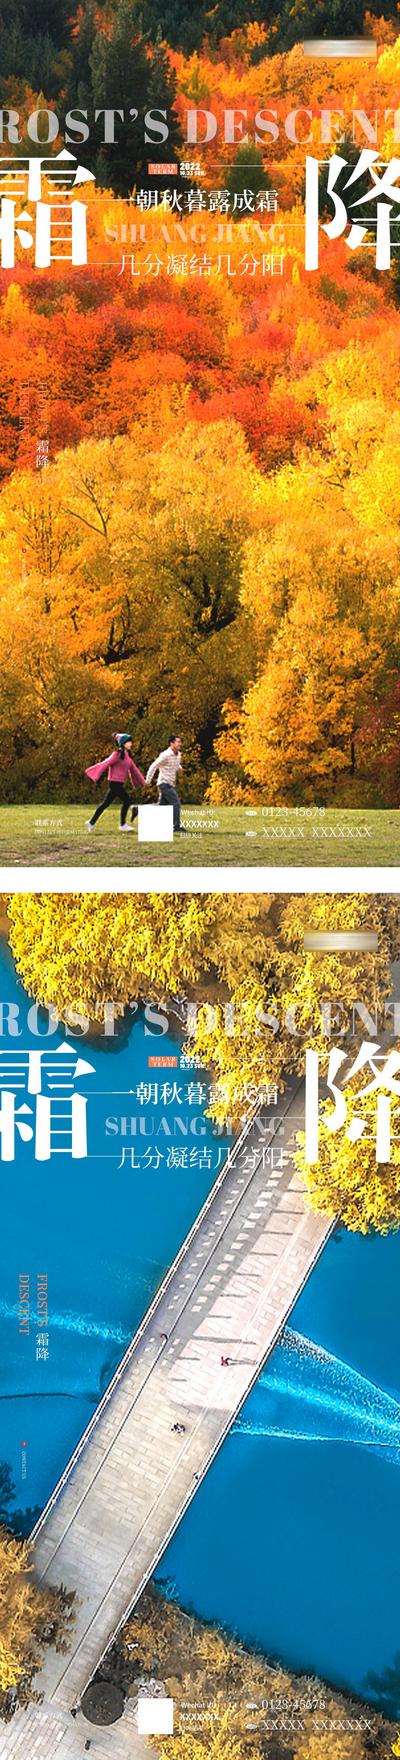 南门网 广告 海报 节气 霜降 枫叶 系列